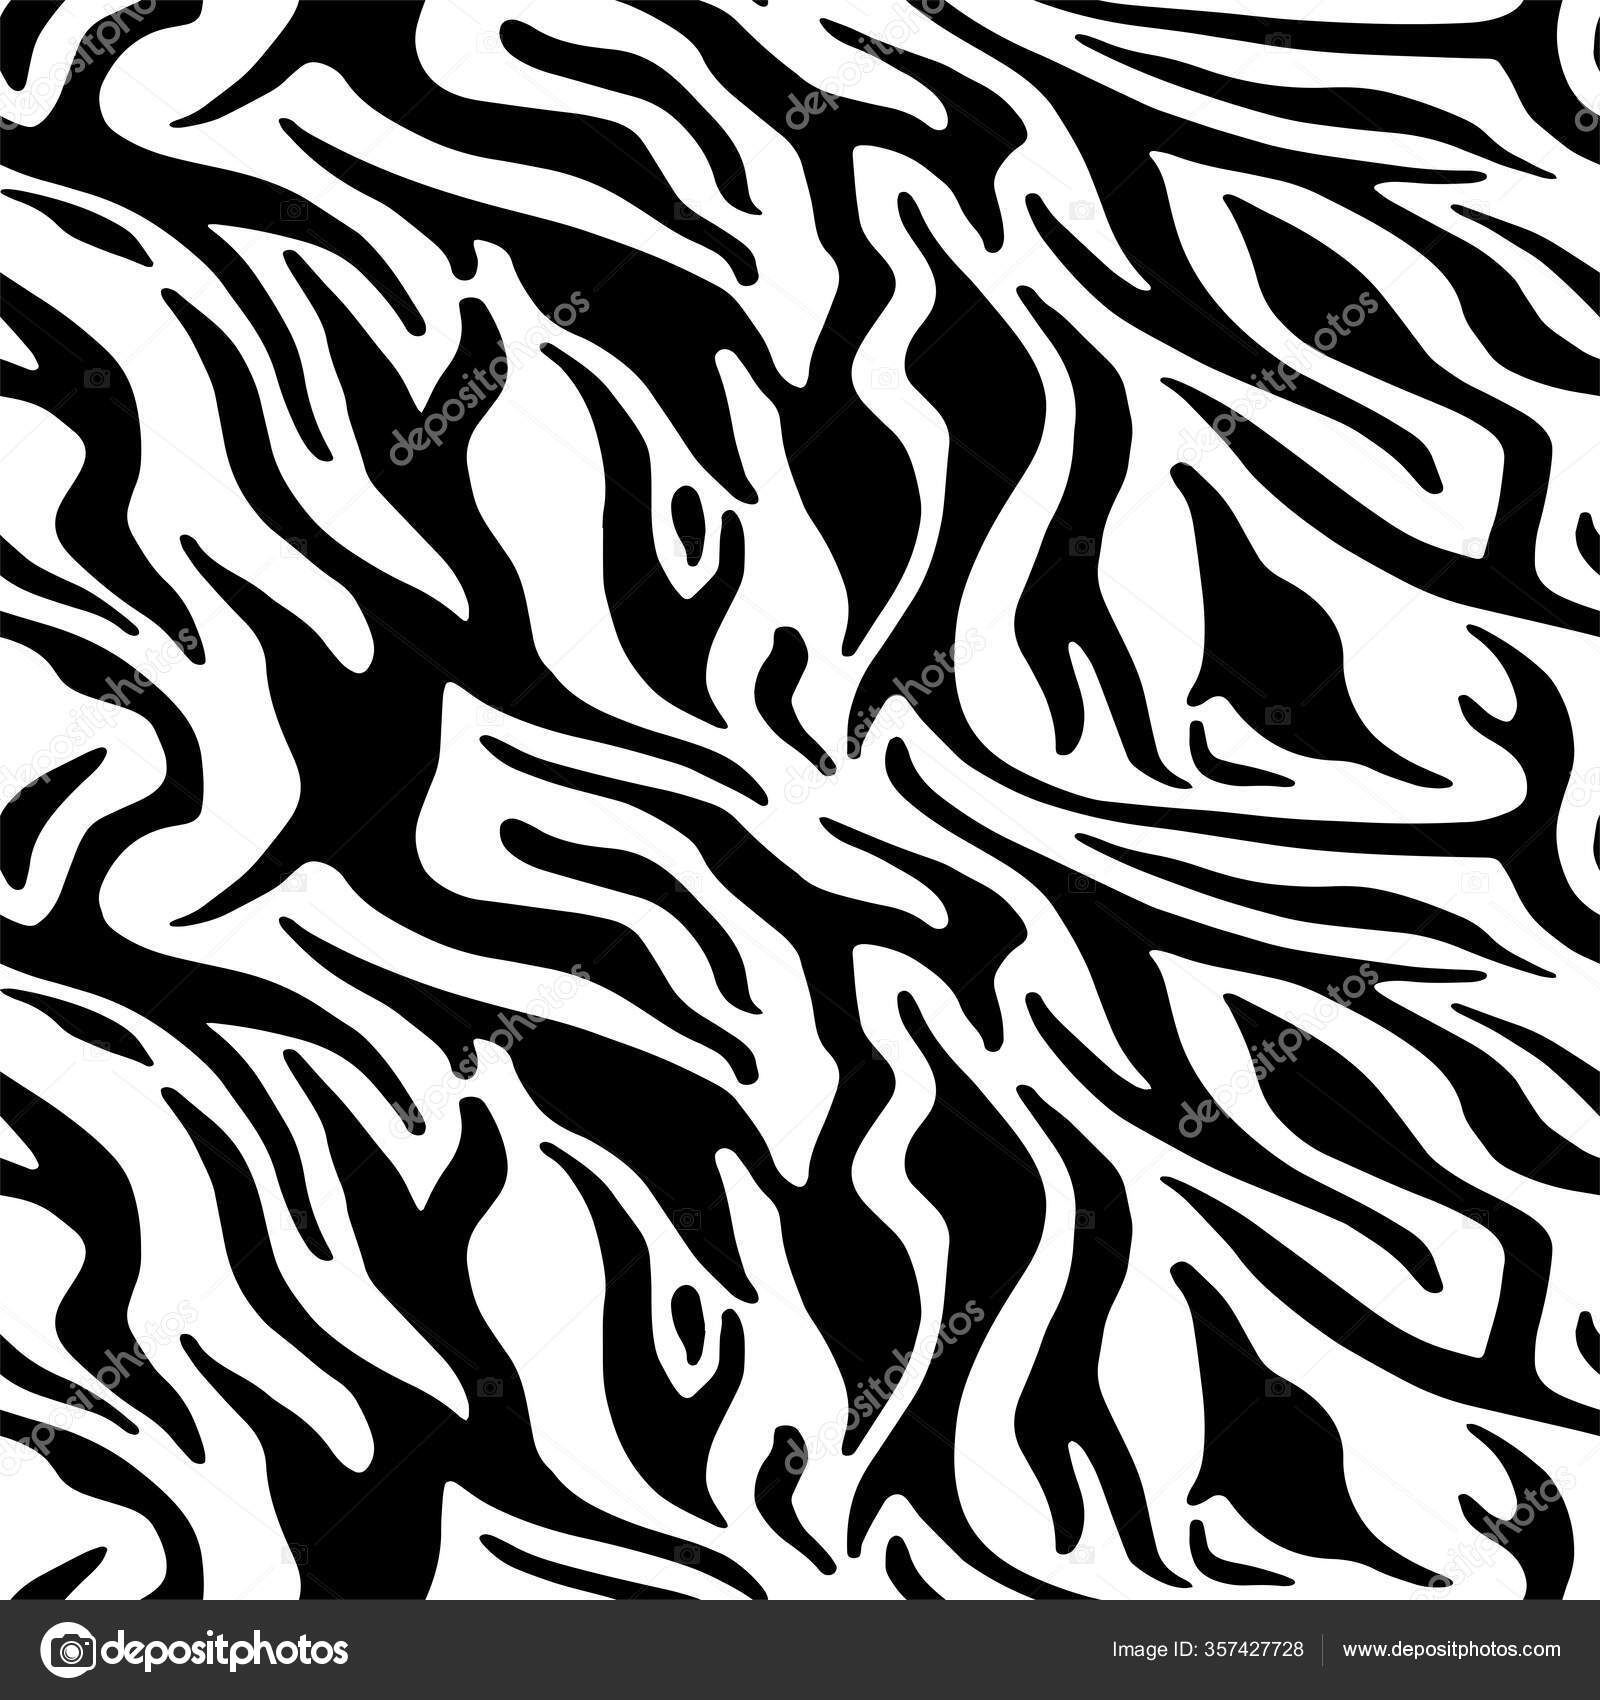 ゼブラと虎の縞動物の皮膚パターンのための完全なシームレスな壁紙 テキスタイルファブリック印刷のための黒と白のデザイン ファッショナブルで家庭的なデザイン ストックベクター C Mskaratash